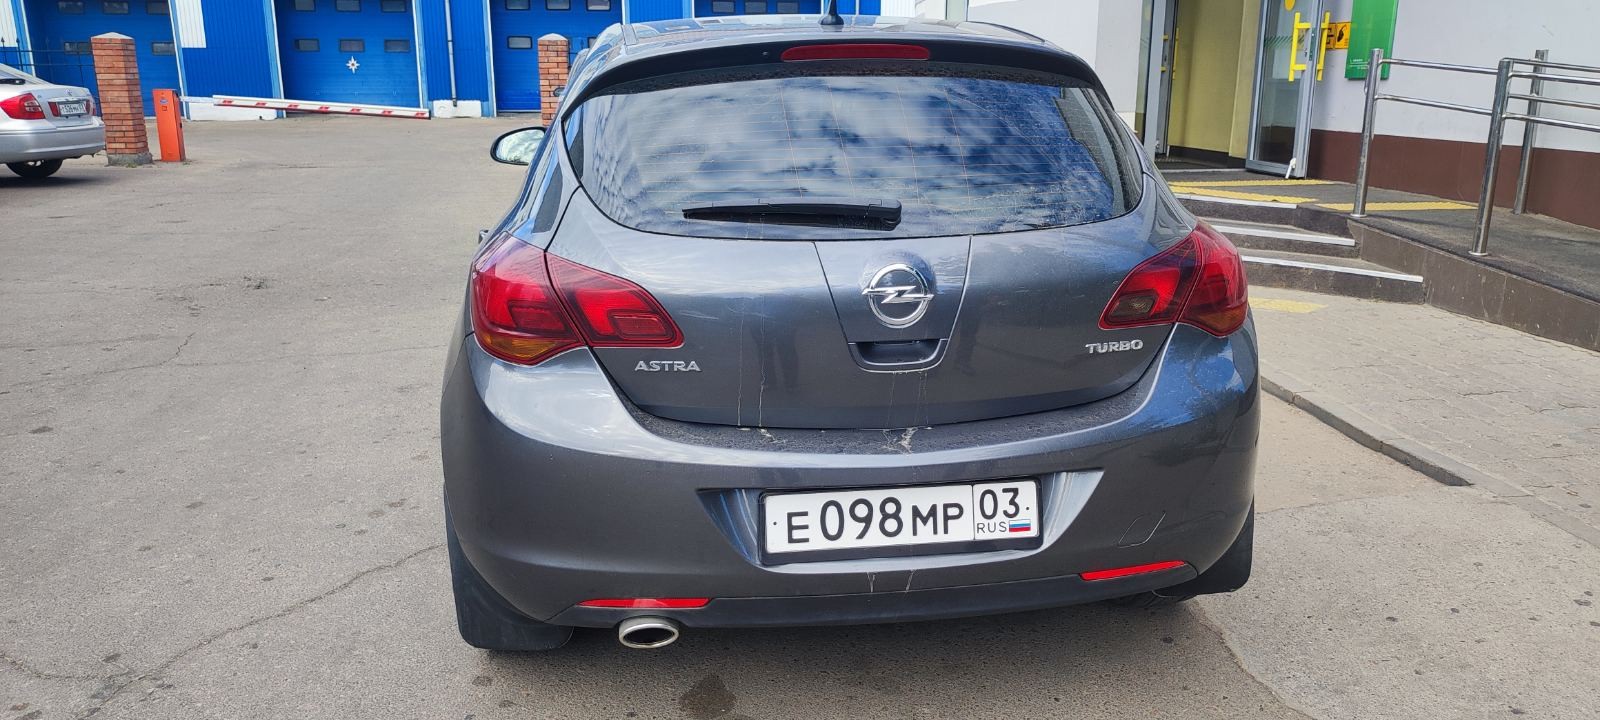 Транспортное средство Opel Astra, 2011 года выпуска, регистрационный знак Е098МР03, идентификационны